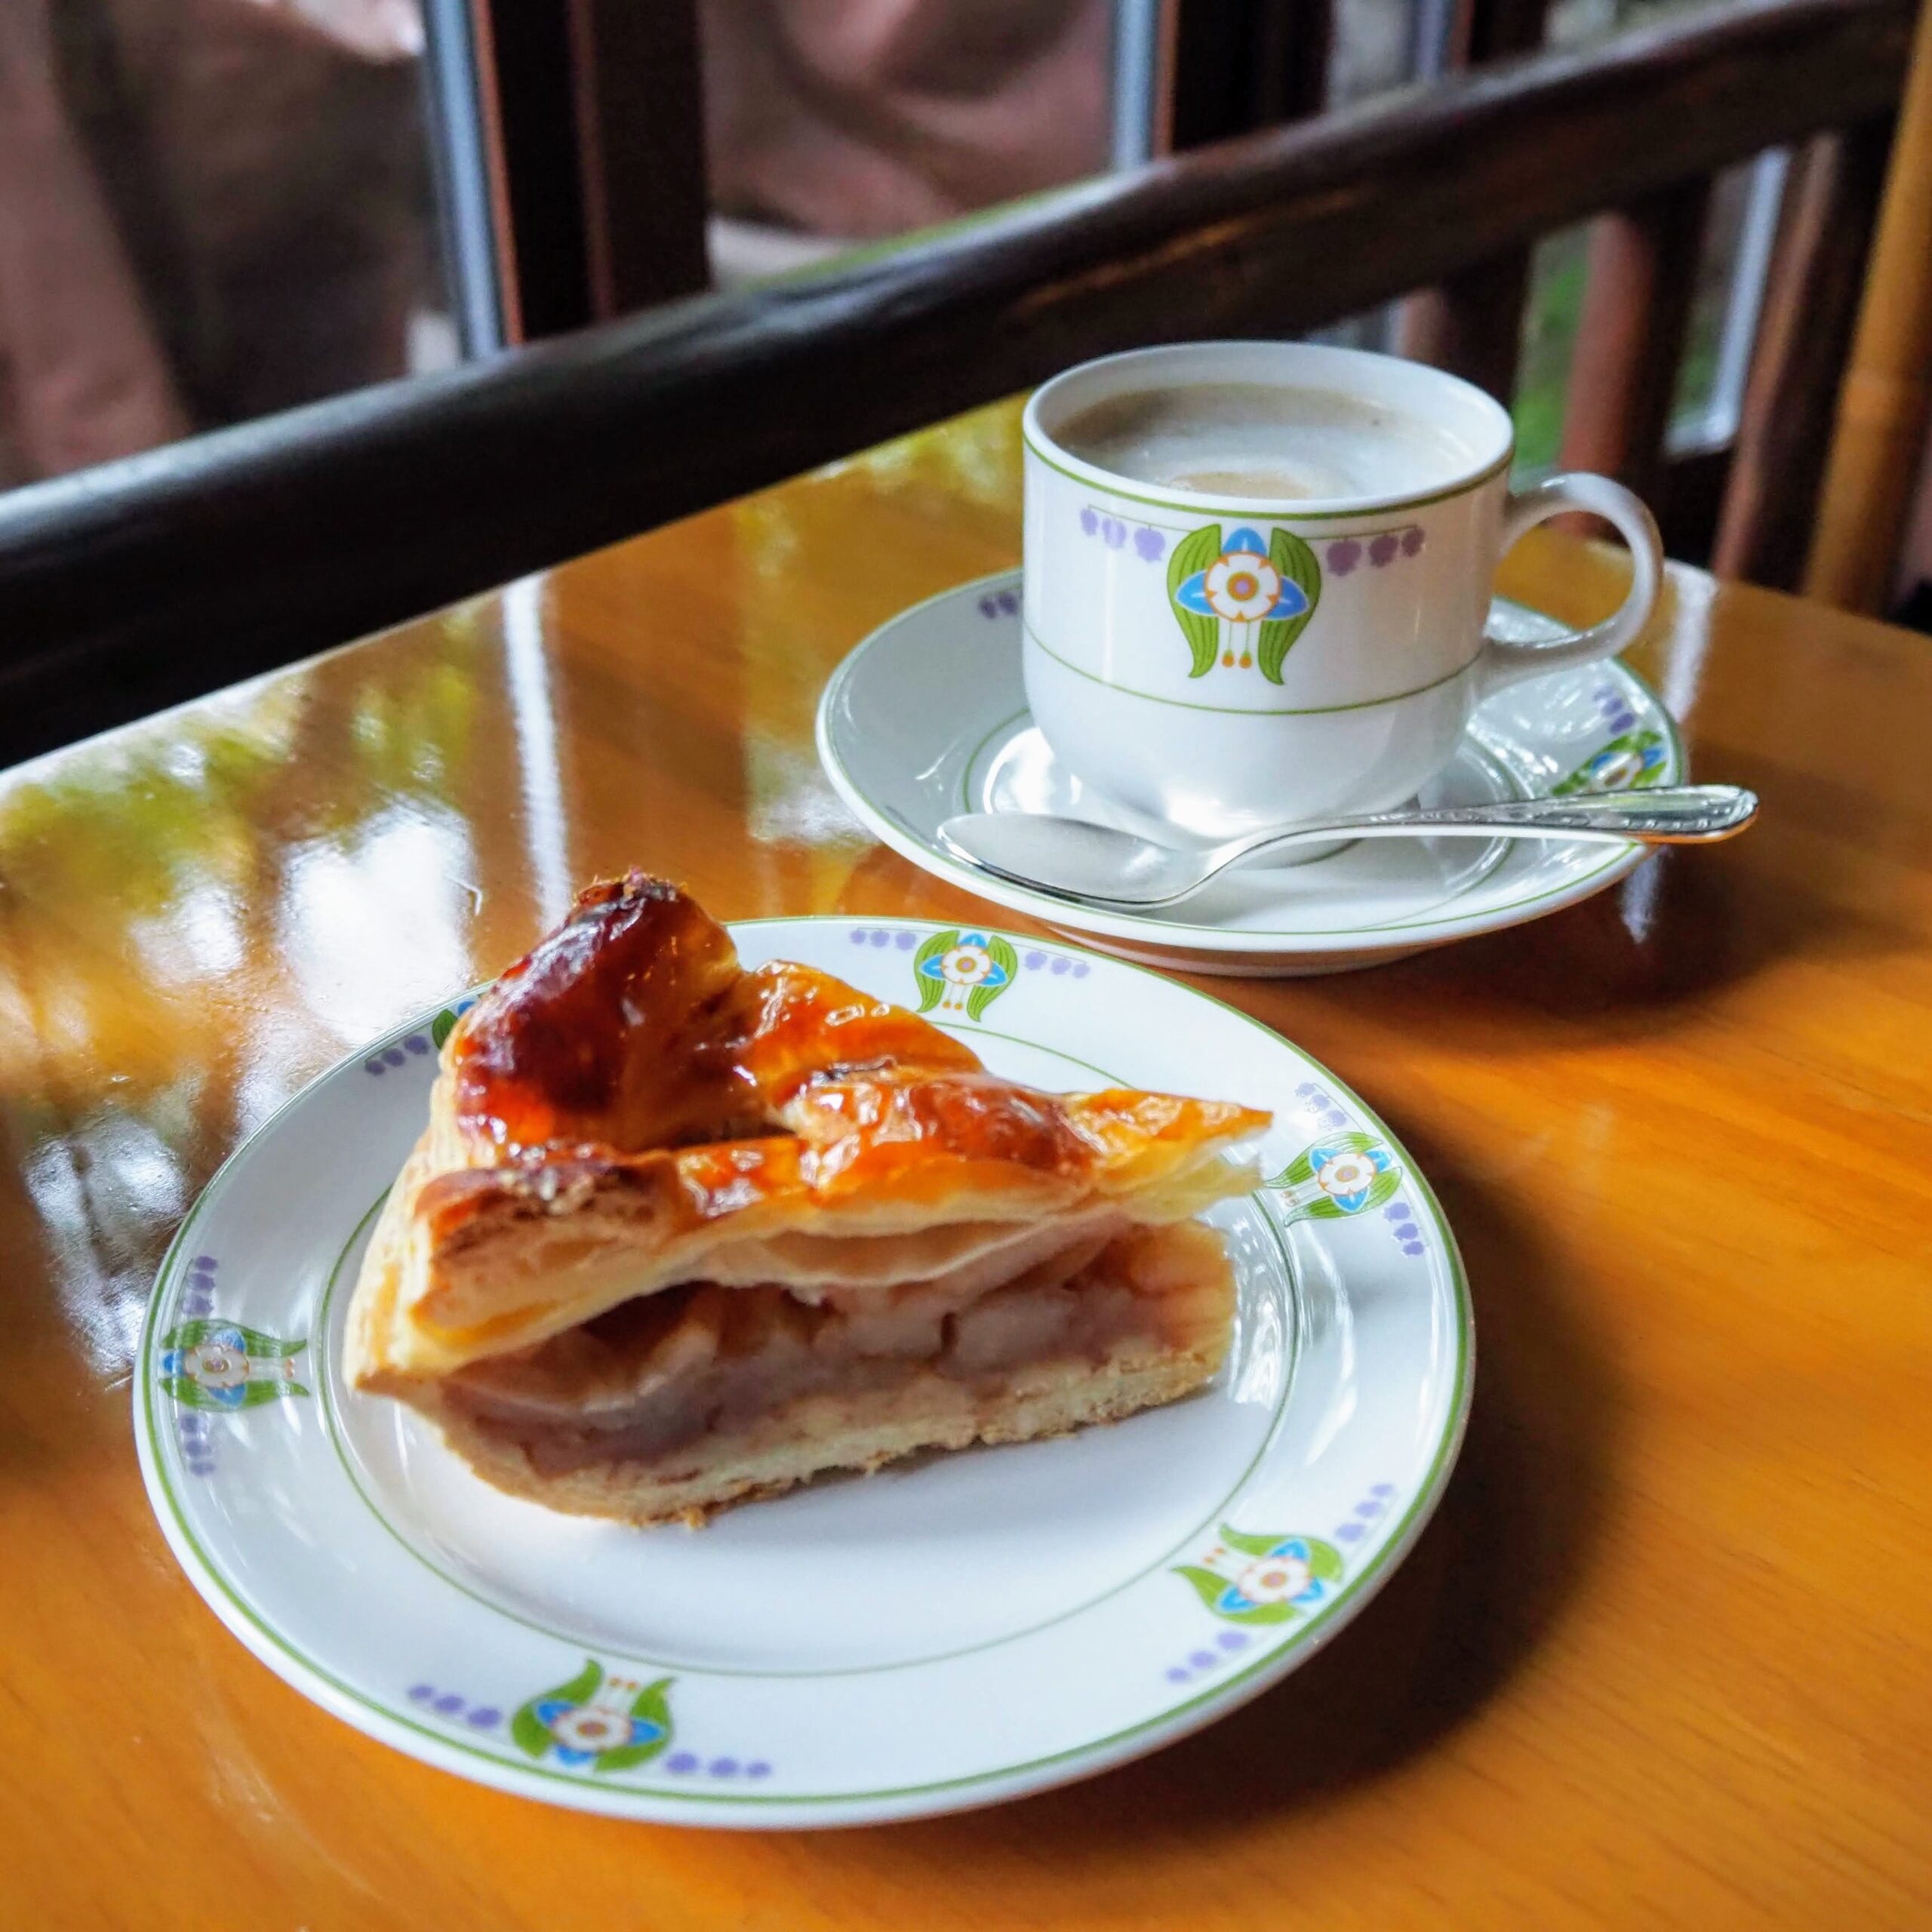 長野県北佐久郡 万平ホテル カフェテラス 伝統のアップルパイ